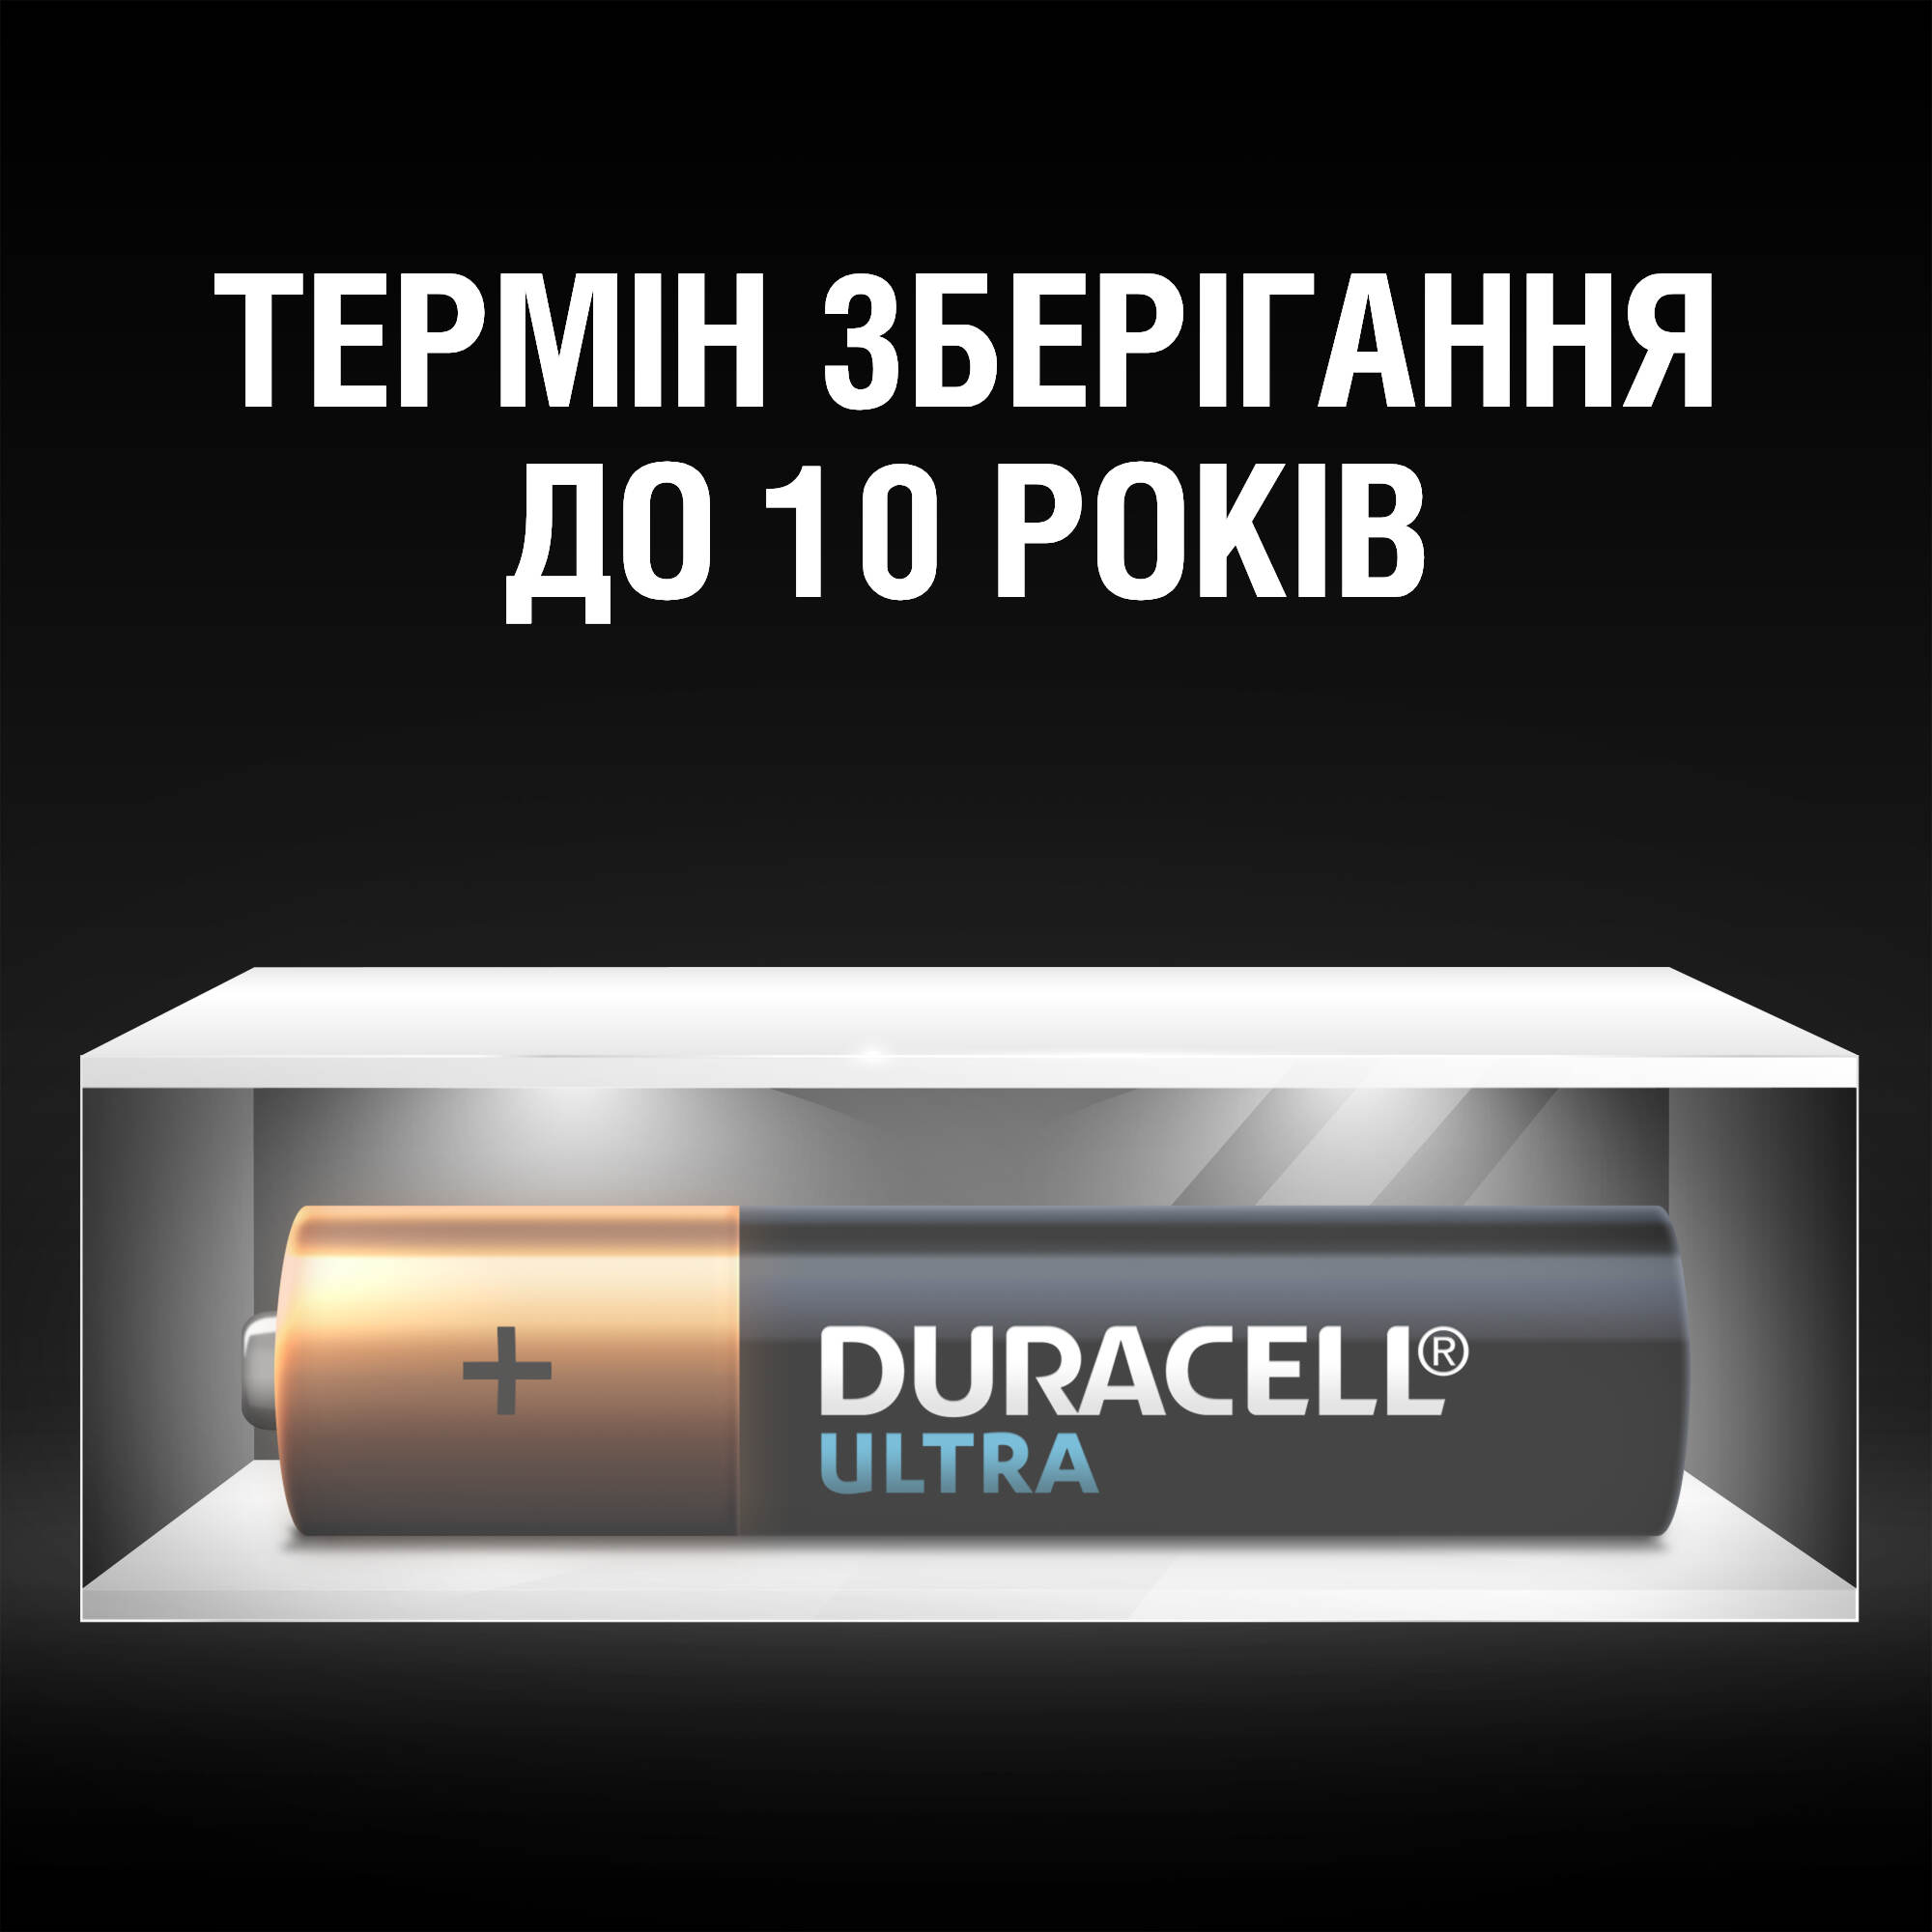 Щелочные батарейки мизинчиковые Duracell Ultra 1,5 V AAA LR03/MX2400, 4 шт. (5004806) - фото 4